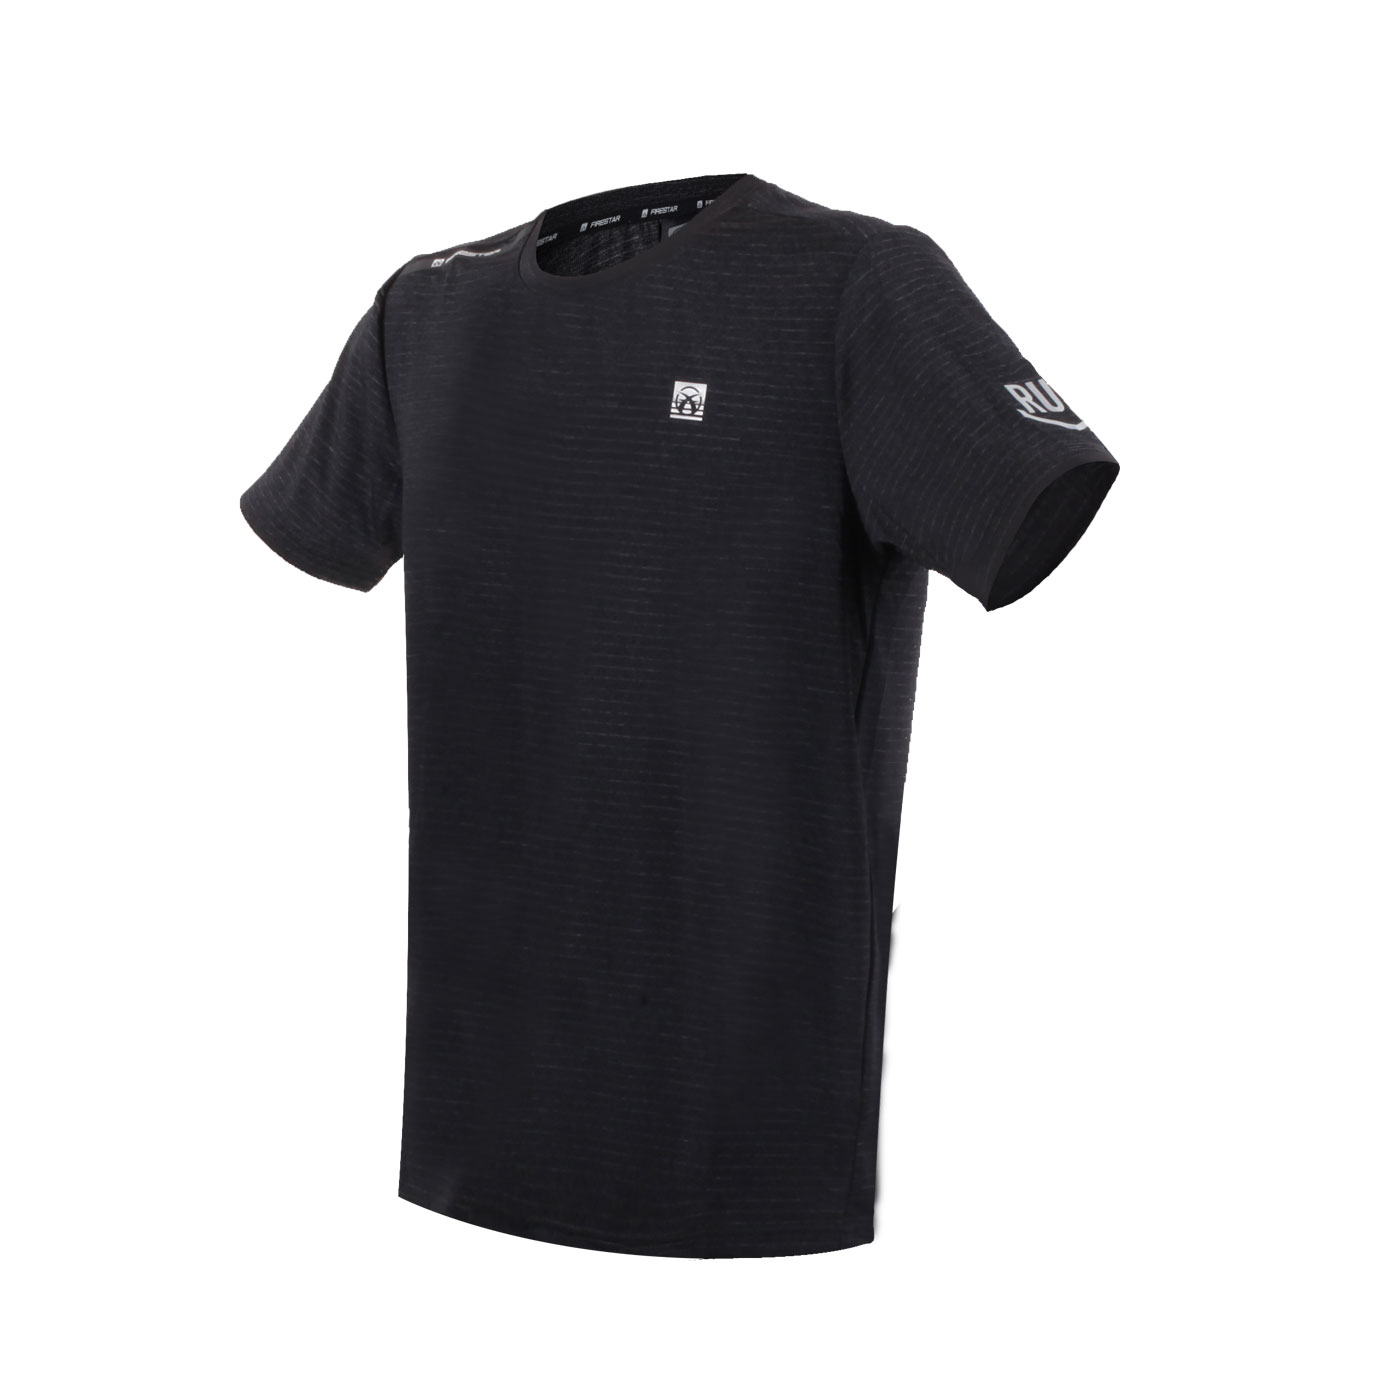 FIRESTAR 男款彈性圓領短袖T恤  D3230-18 - 深麻灰條紋